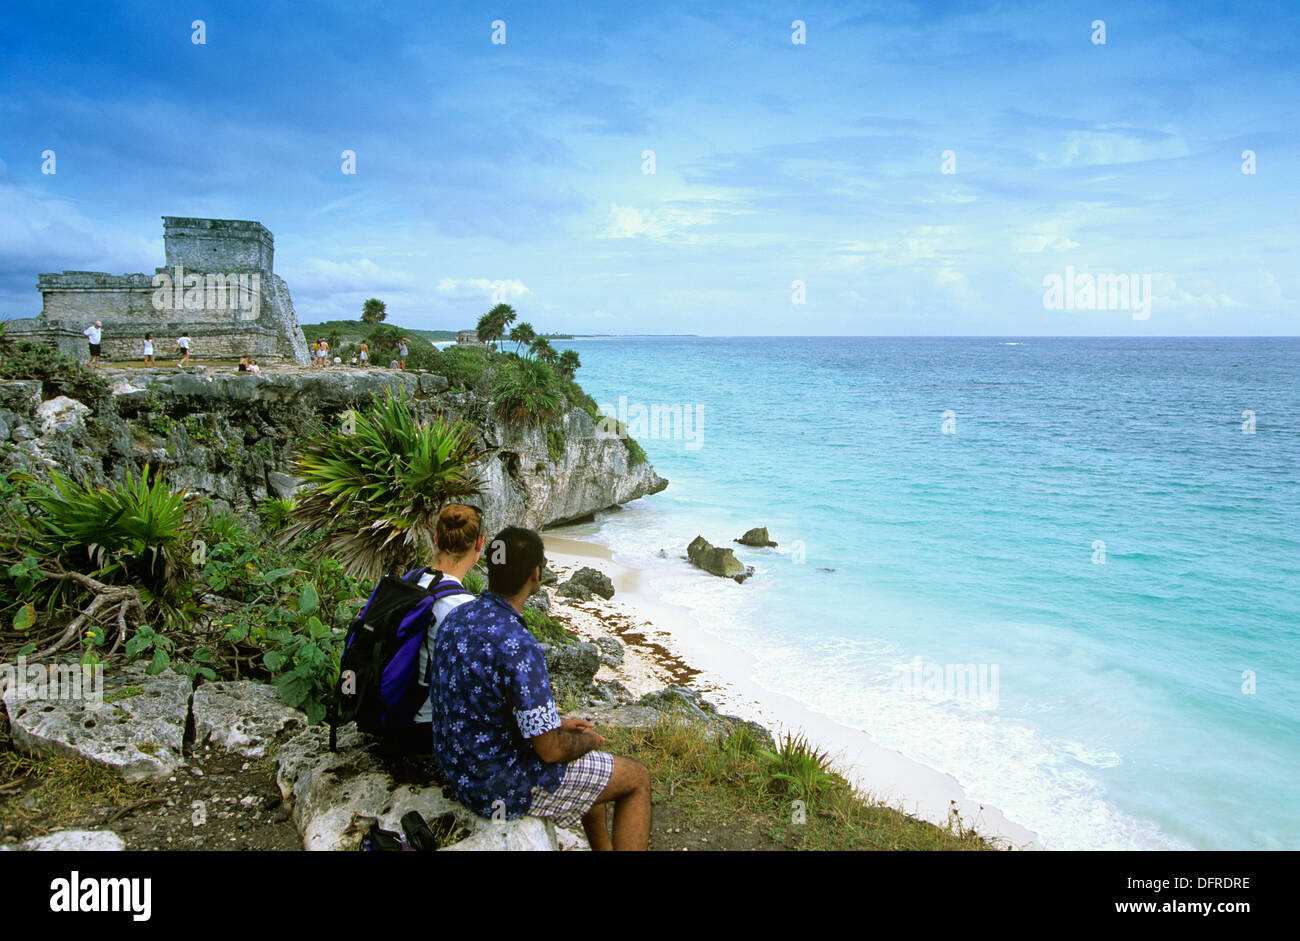 Eine sagenhafte Festung am Meer, ist Tulum am meisten von allen Maya-Stätten, Quintana Roo, Mexiko besucht. Stockfoto